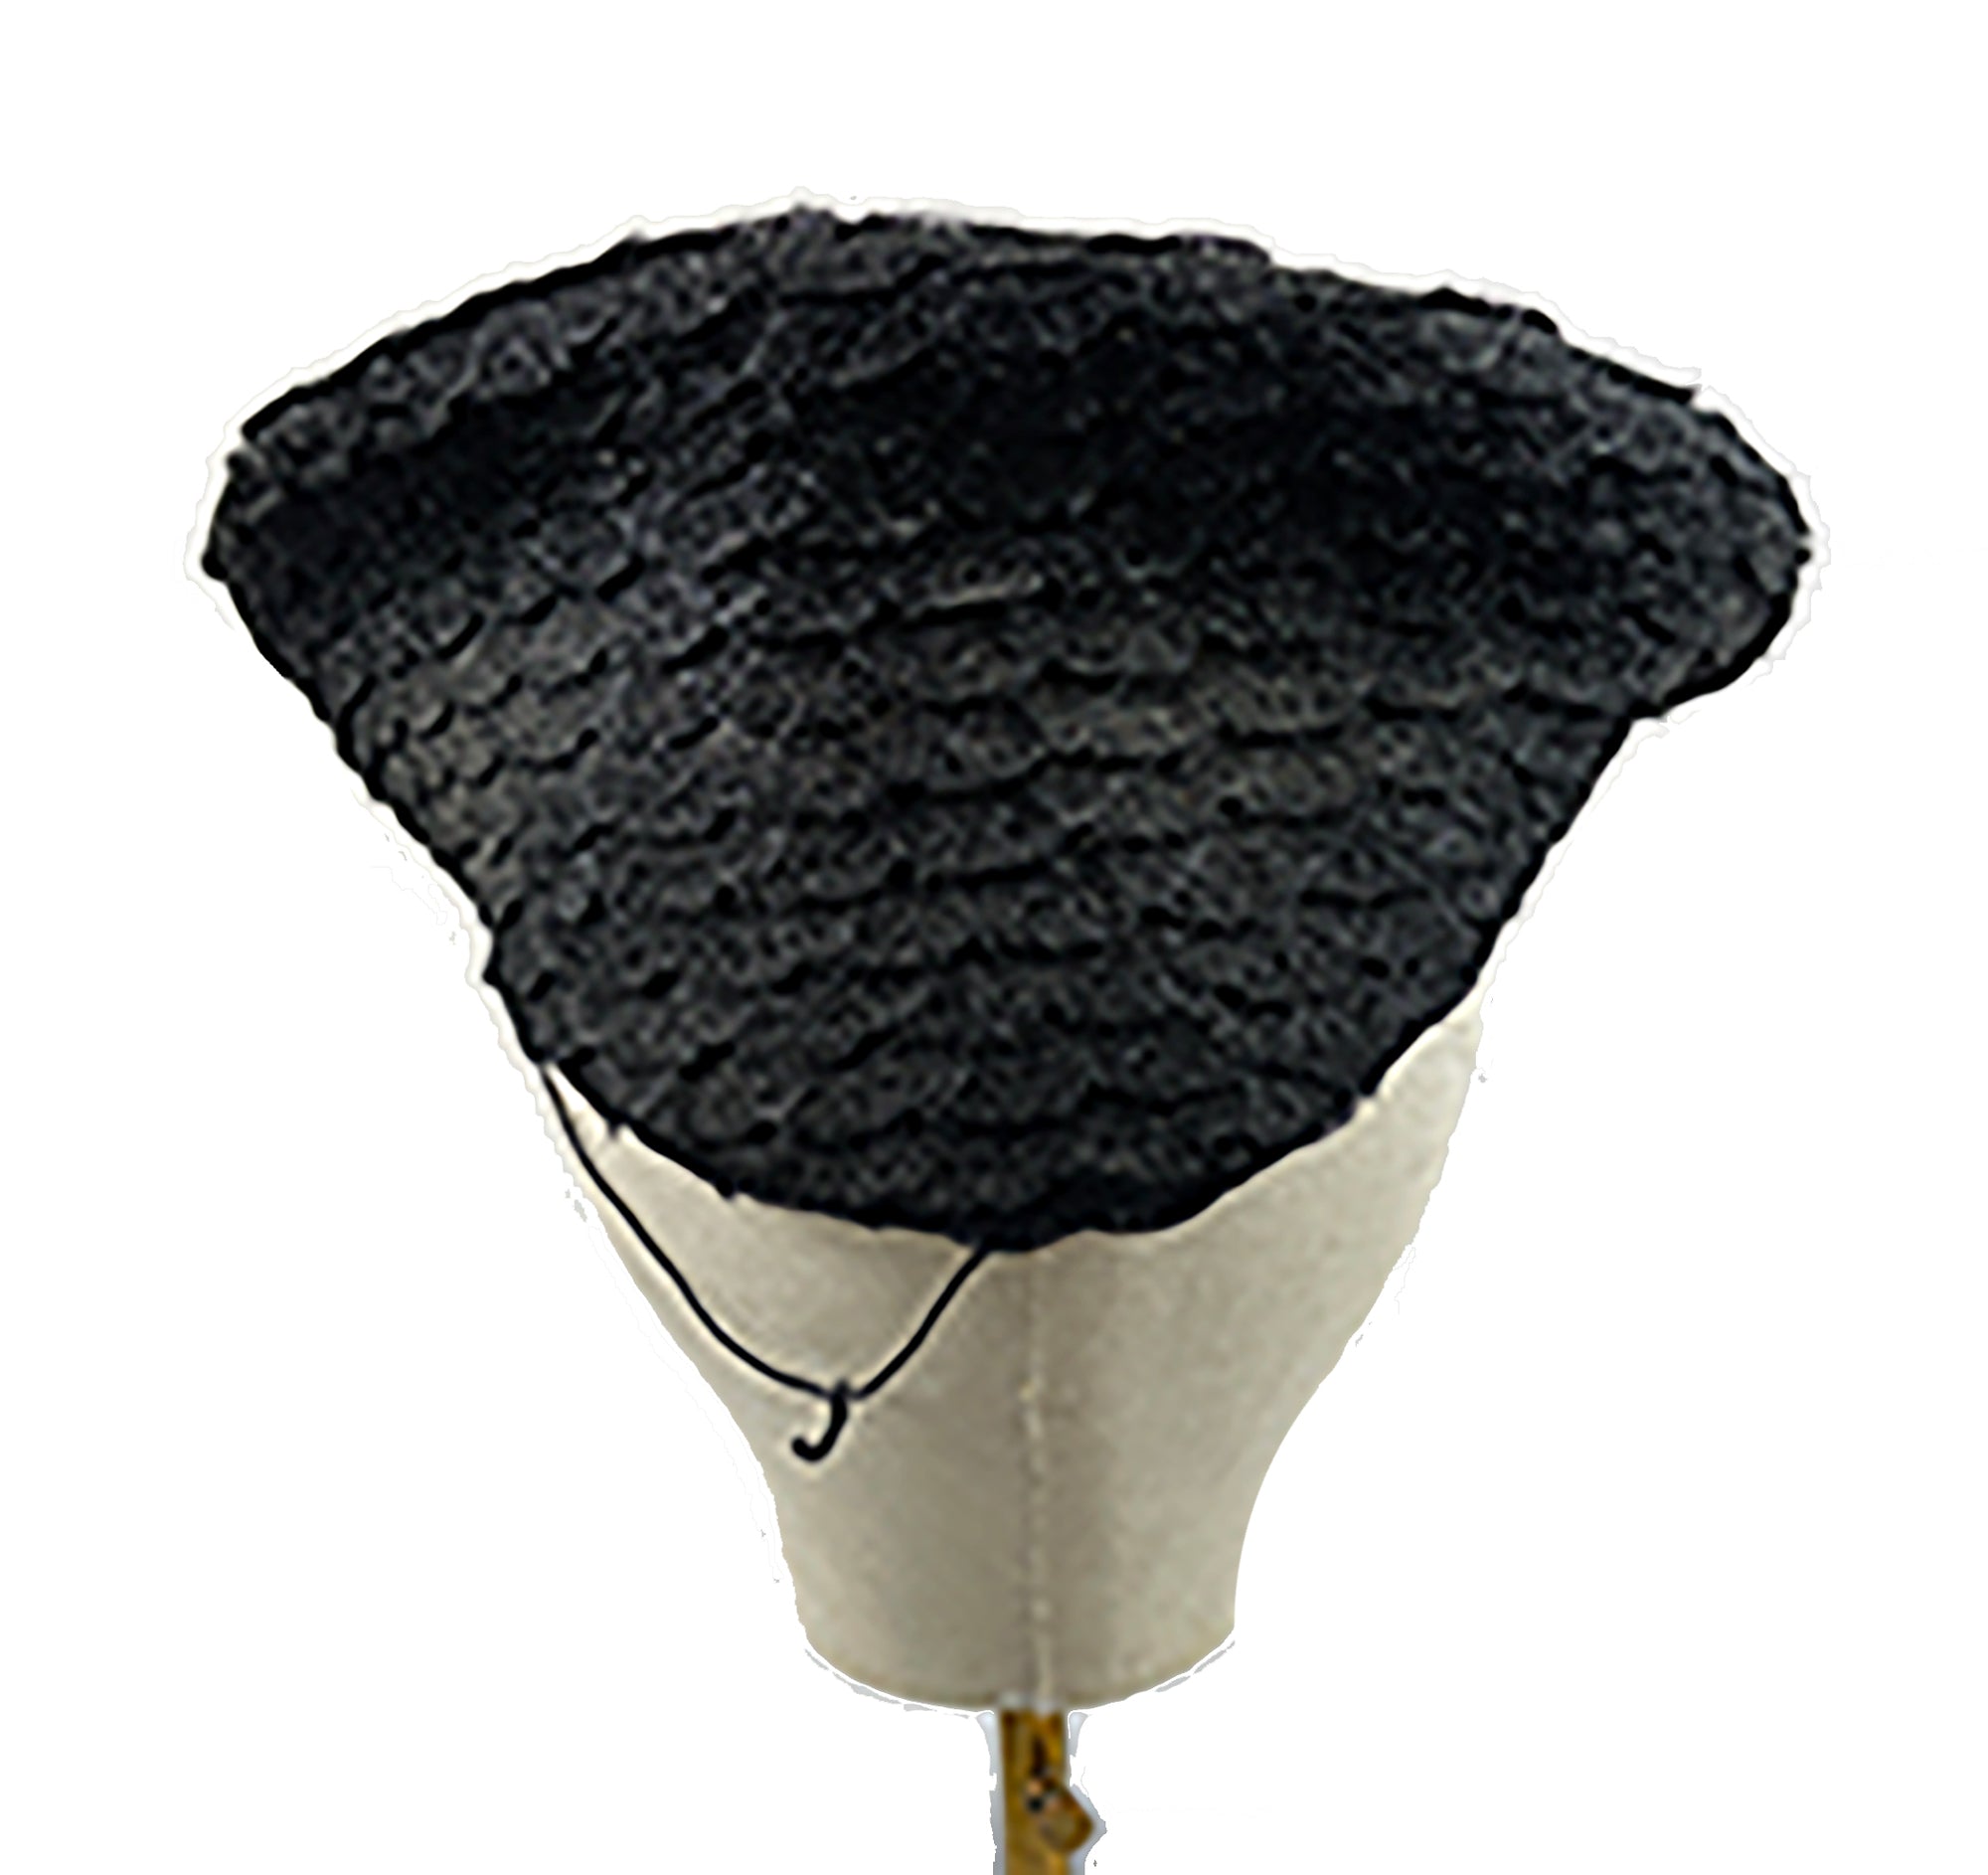 Vintage Tilt Hat Black Braid with Large Hat Pin